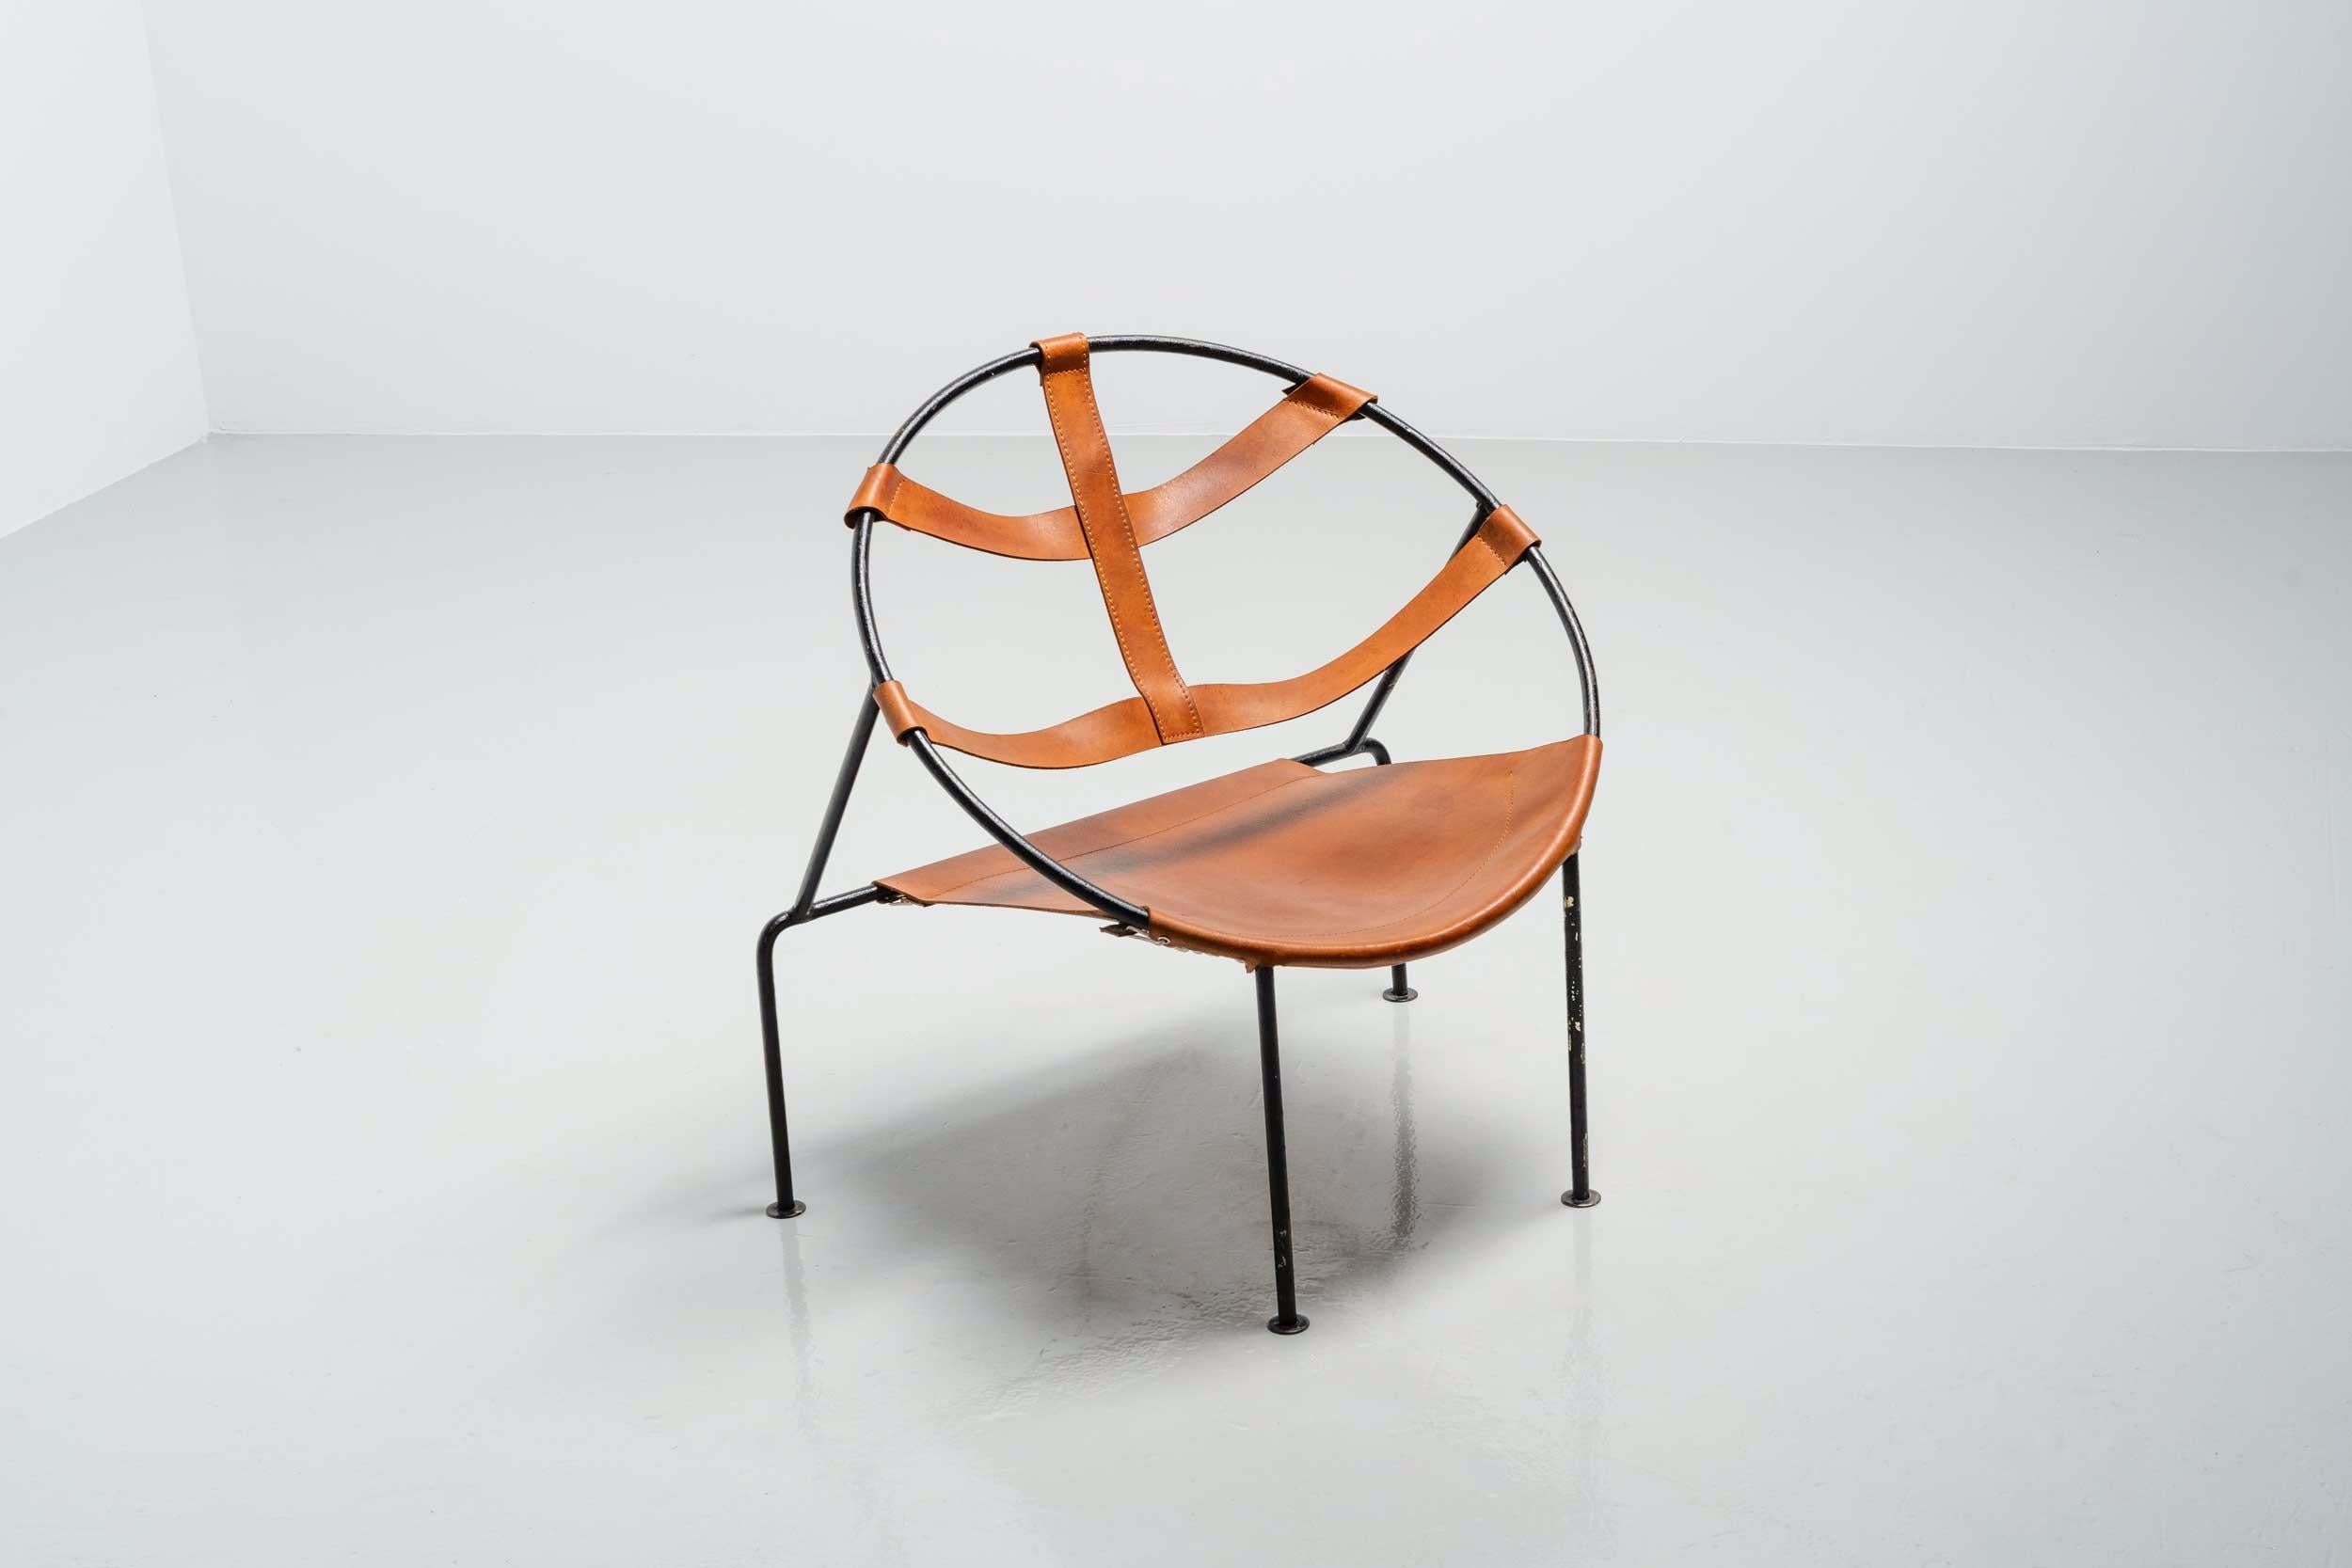 Cette chaise, modèle FDC-1, a été conçue par Flavio de Carvalho (1899-1973) et fabriquée dans un atelier local au Brésil, en 1950. La chaise a une structure en acier solide, en forme de cercle, et a une assise et un dossier en cuir naturel qui ont